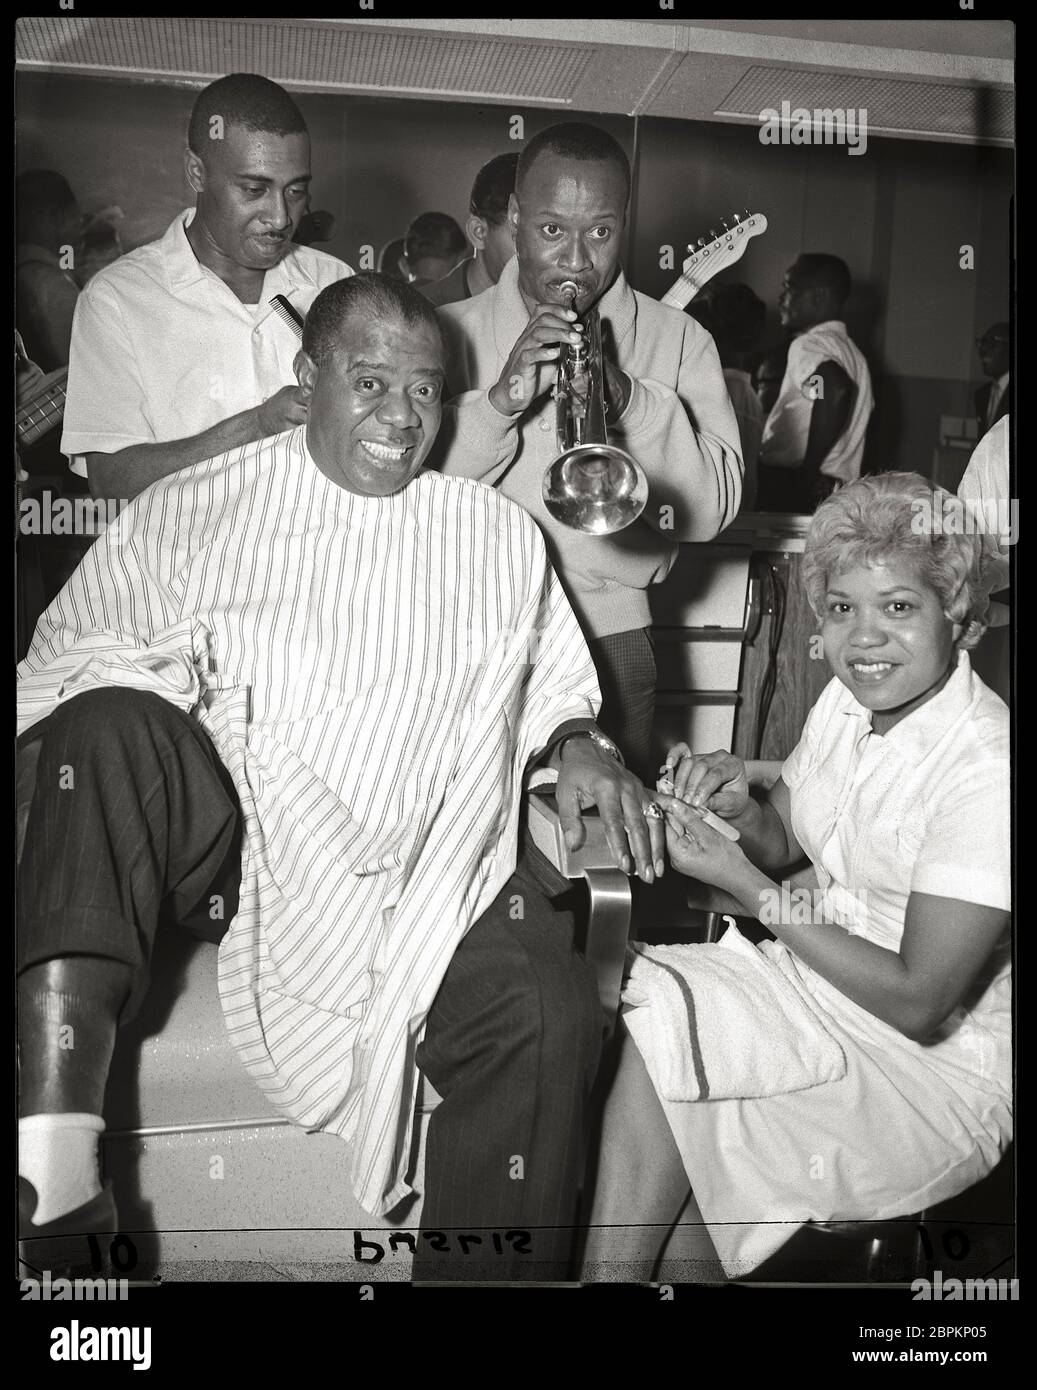 Louie 'Fatchmo' Armstrong lavora in un barbiere a Chicago, Illinois. 1961. Immagine da 4x5 pollici negativo. Foto Stock